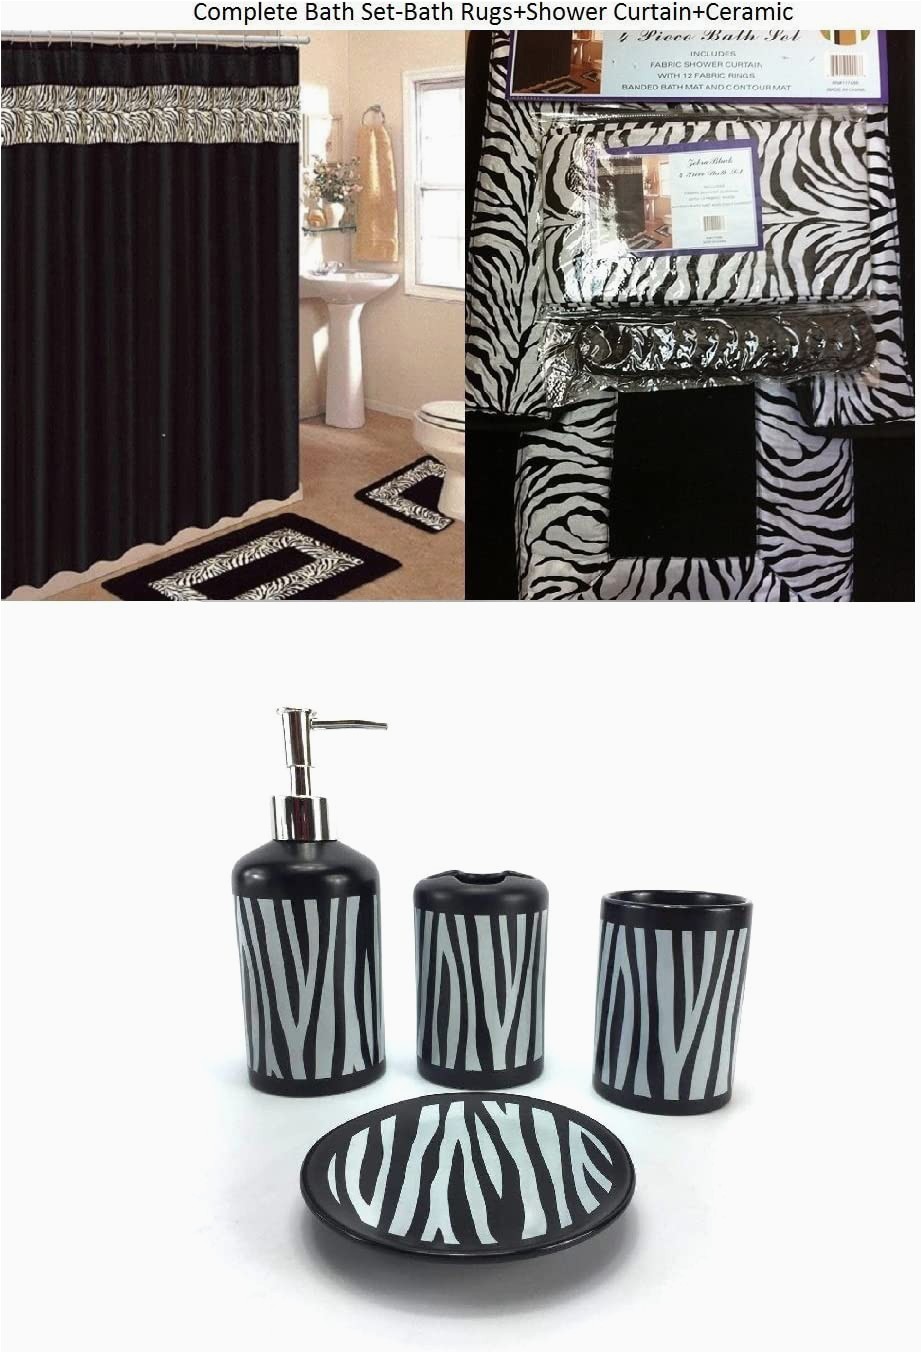 Bathroom Rugs and Accessories Ahf Wpm 19 Piece Bath Accessory Set Black Zebra Animal Print Bath Rug Set Black Zebra Shower Curtain & Accessories